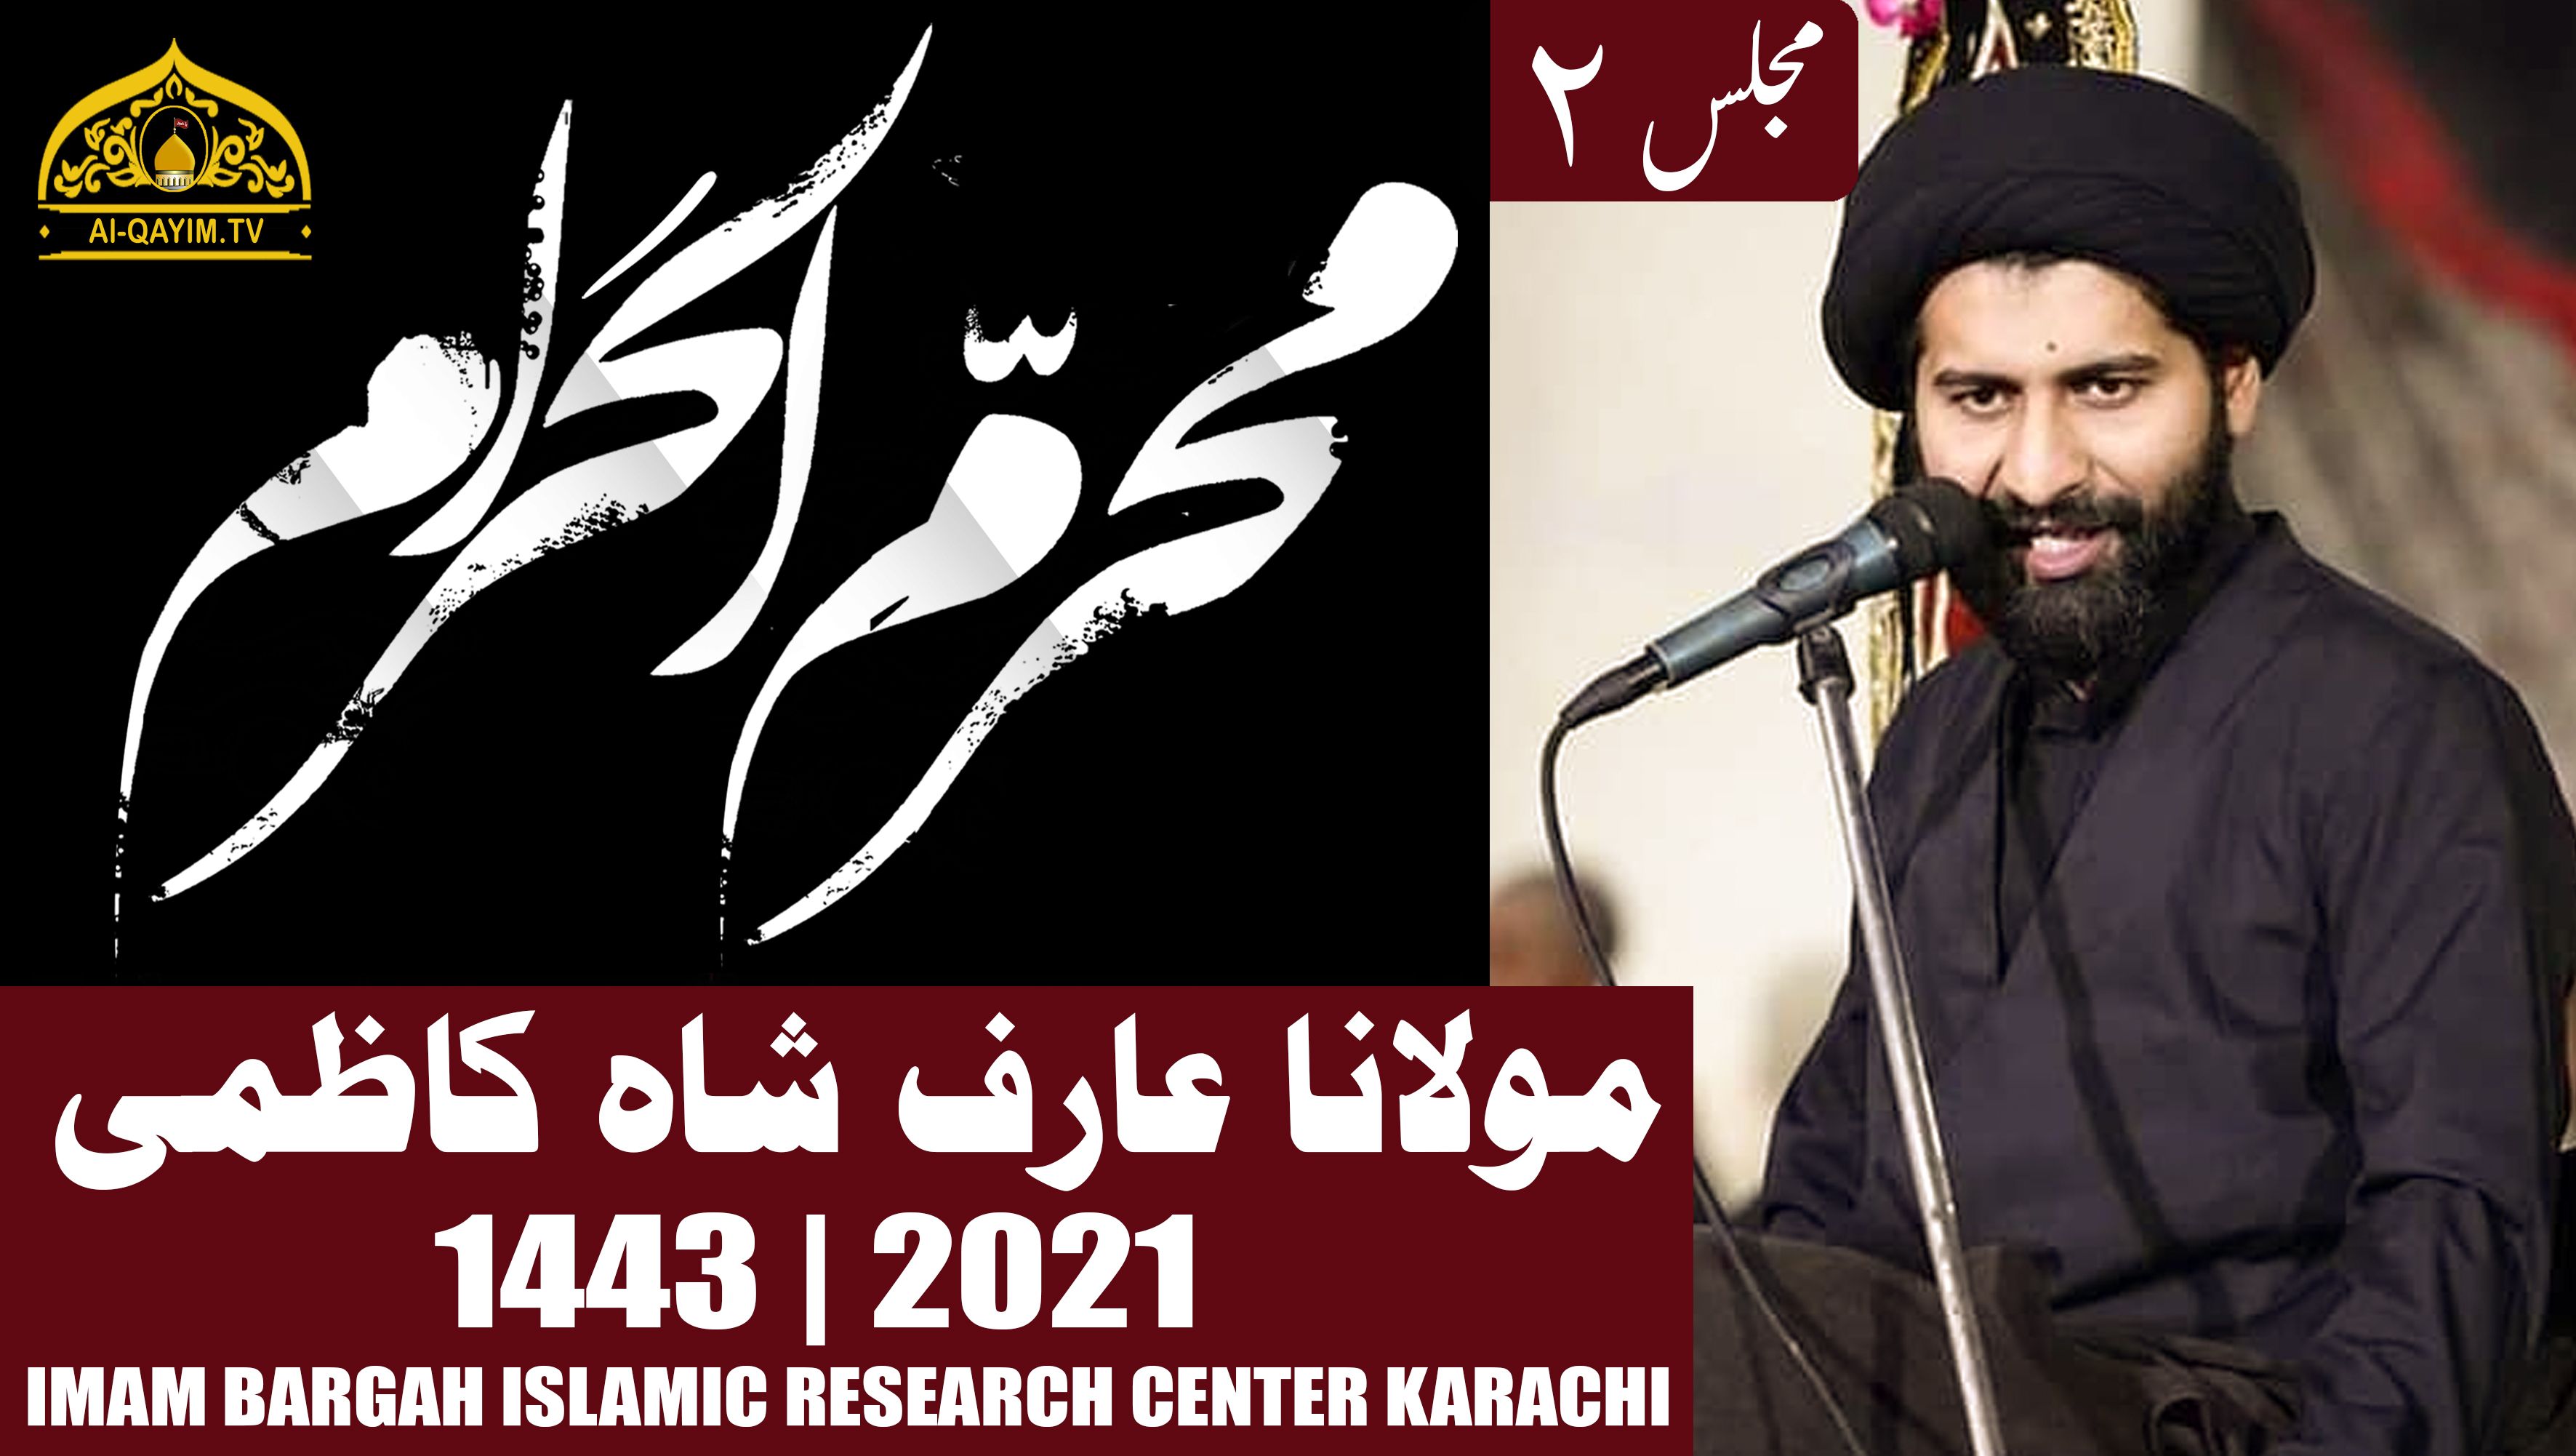 2nd Muharram 2021 [Marfat-e-Nafs] | Moulana Arif Shah Kazmi - Imam Bargah Islamic Research Center